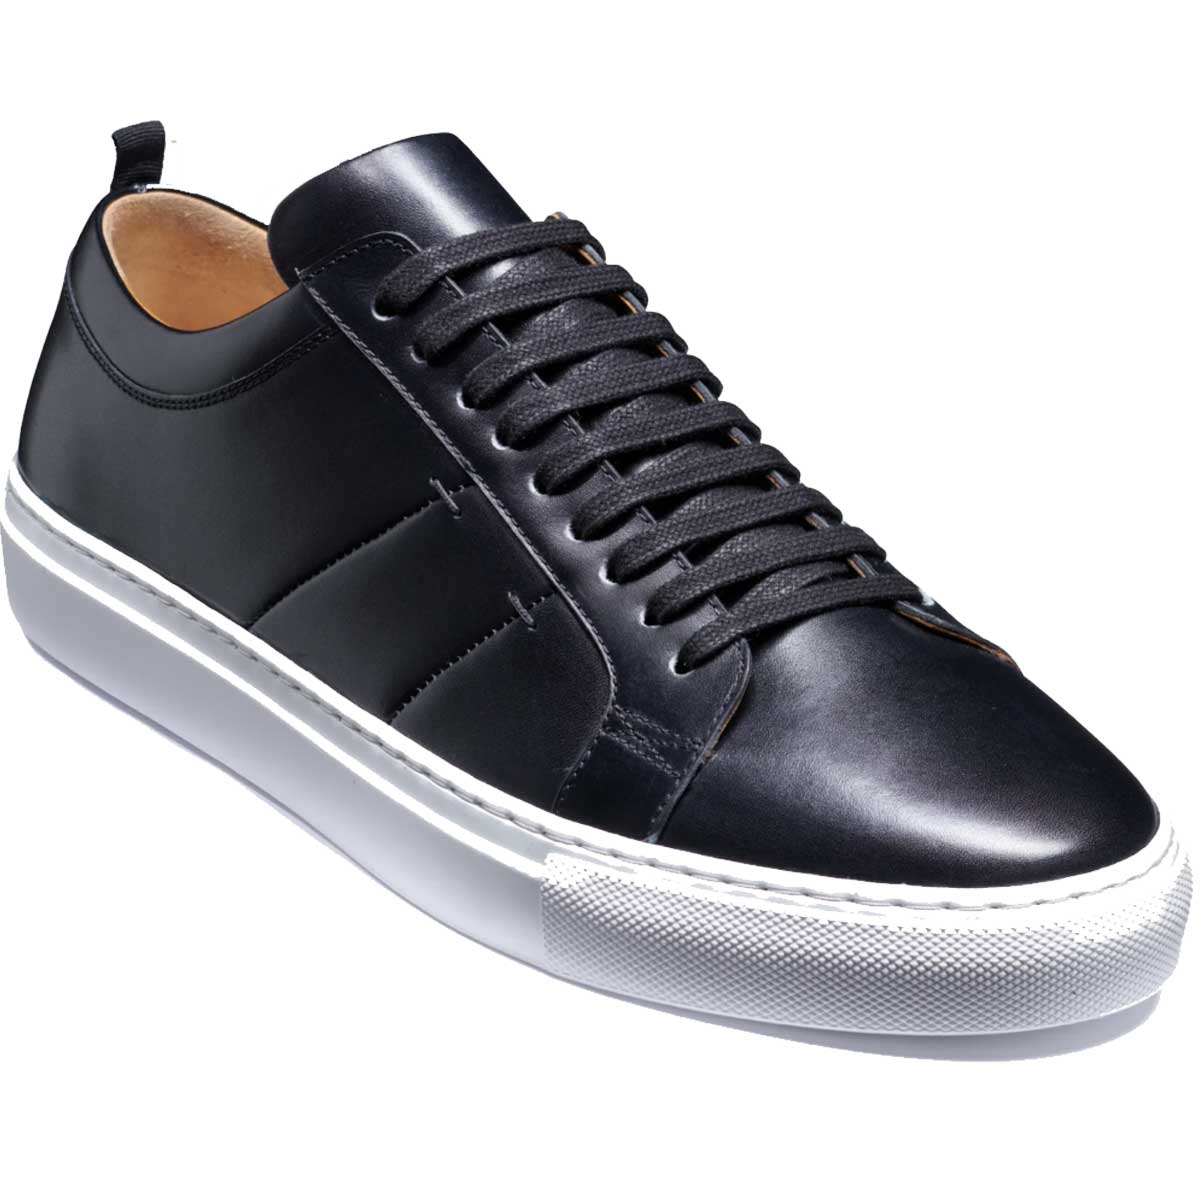 BARKER Greg Sneakers - Mens - Black Calf